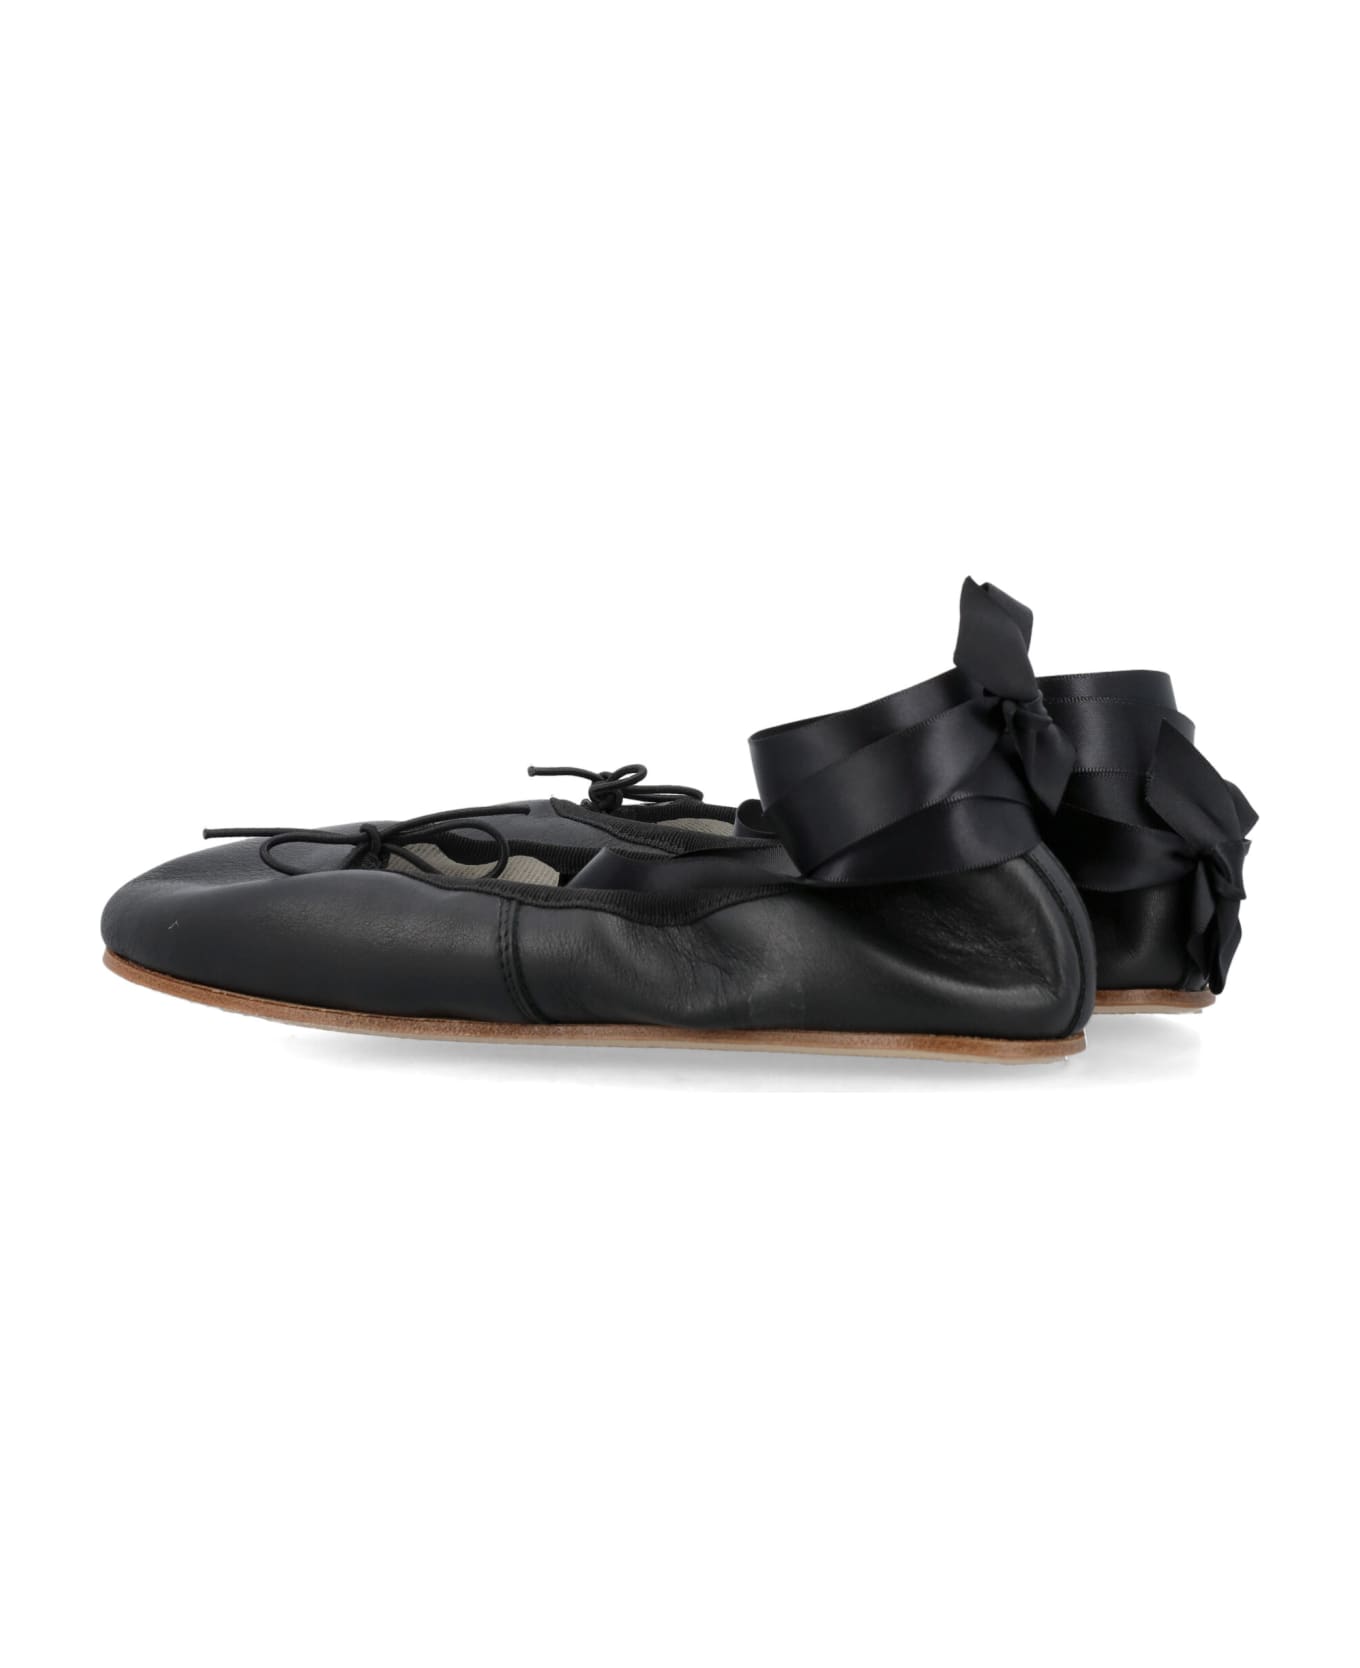 Repetto Sophia Ballerina Shoes - Black